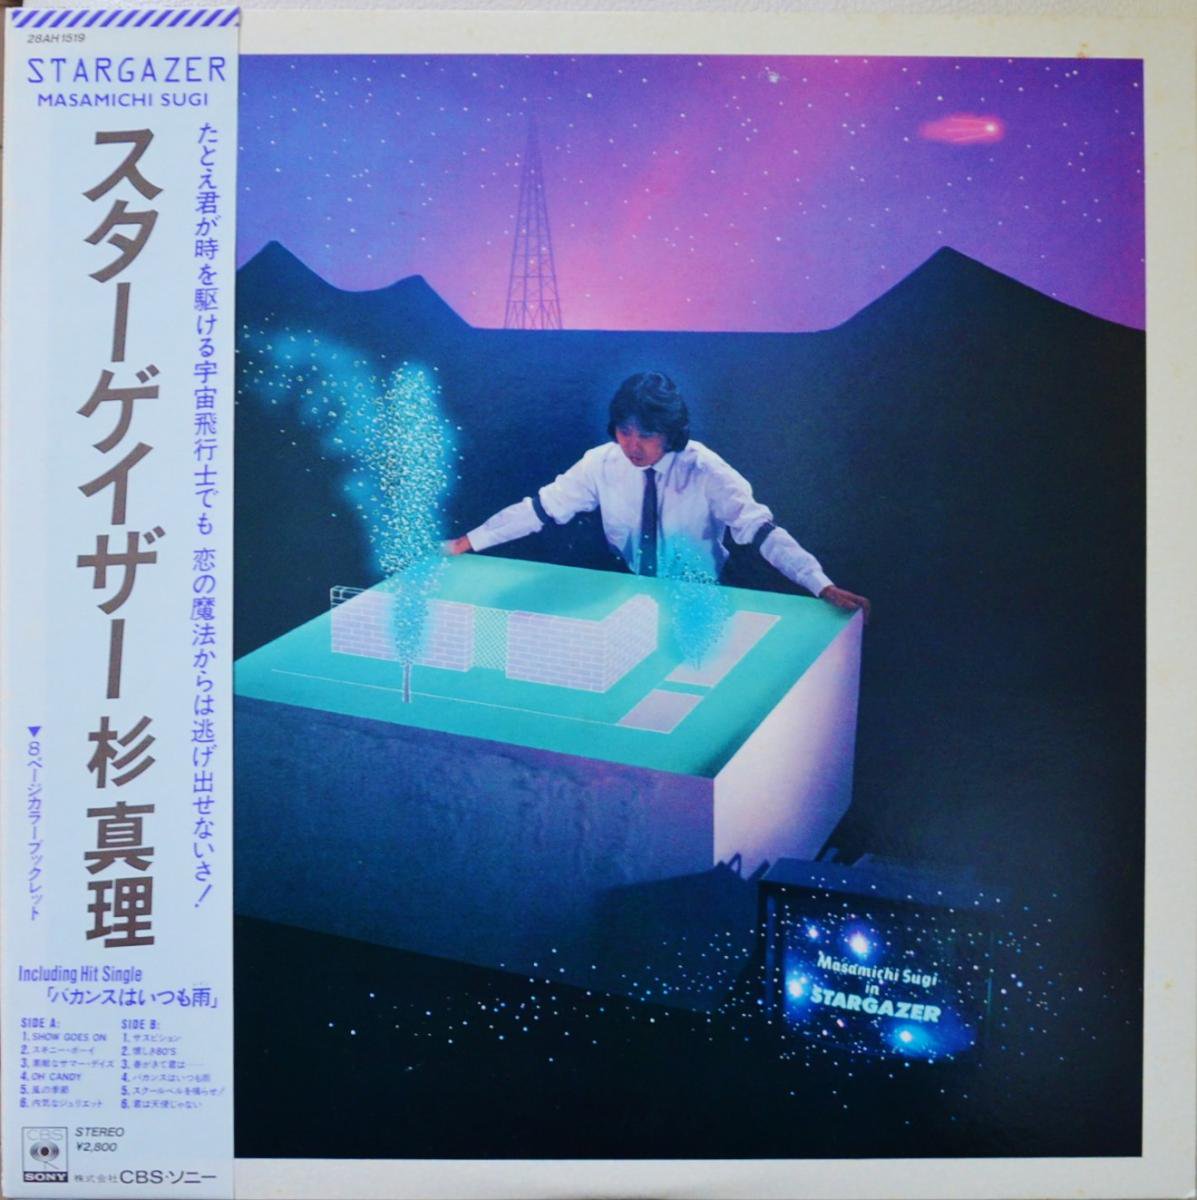 杉真理 MASAMICHI SUGI / スターゲイザー STARGAZER (LP) - HIP TANK 